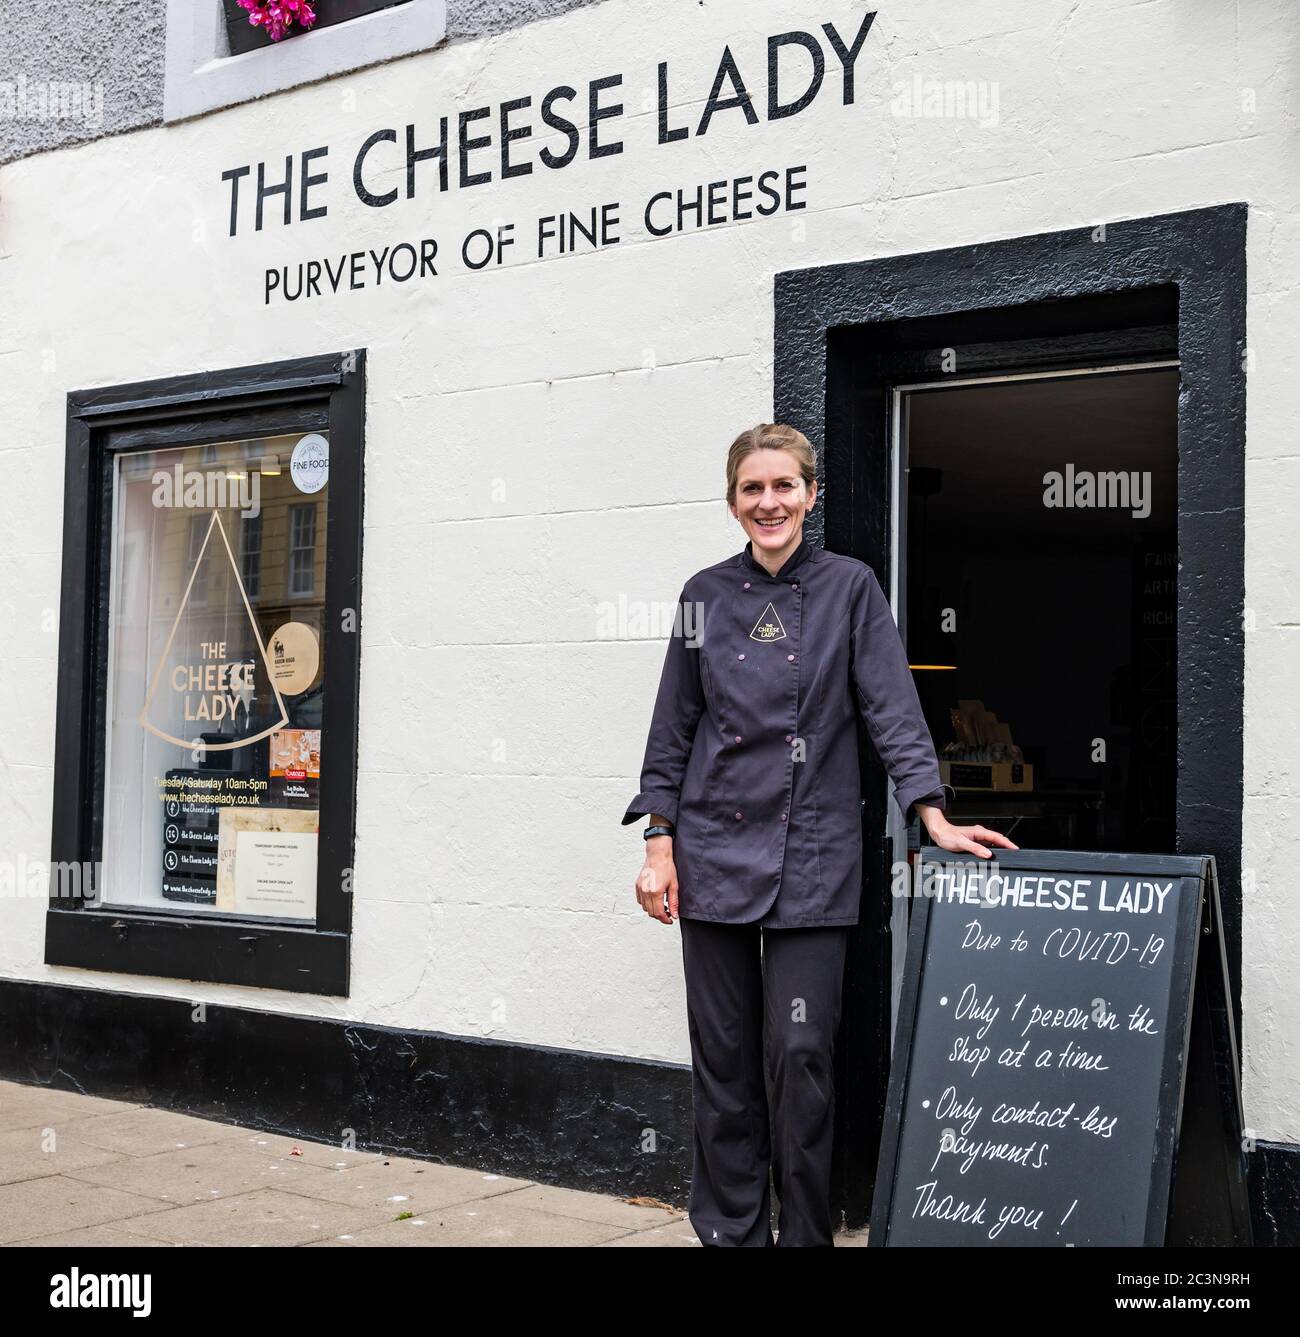 Svetlana Kukharchuk, proprietario del negozio Cheese Lady Cheesemonger con avviso Covid-19, Haddington, East Lothian, Scozia, Regno Unito Foto Stock